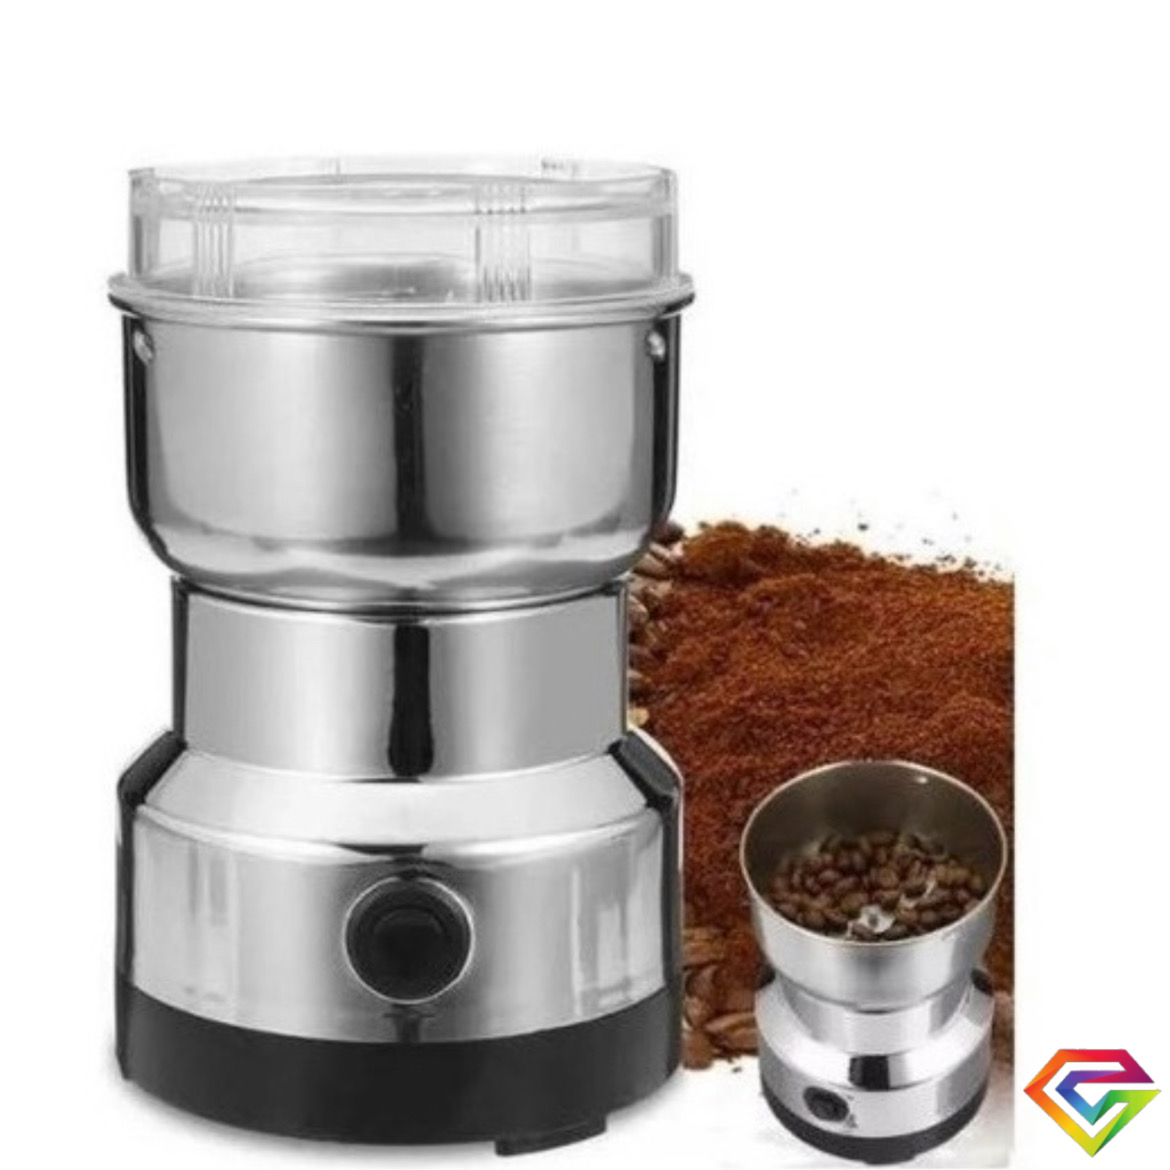 Moledor molinillo eléctrico de café granos y semillas